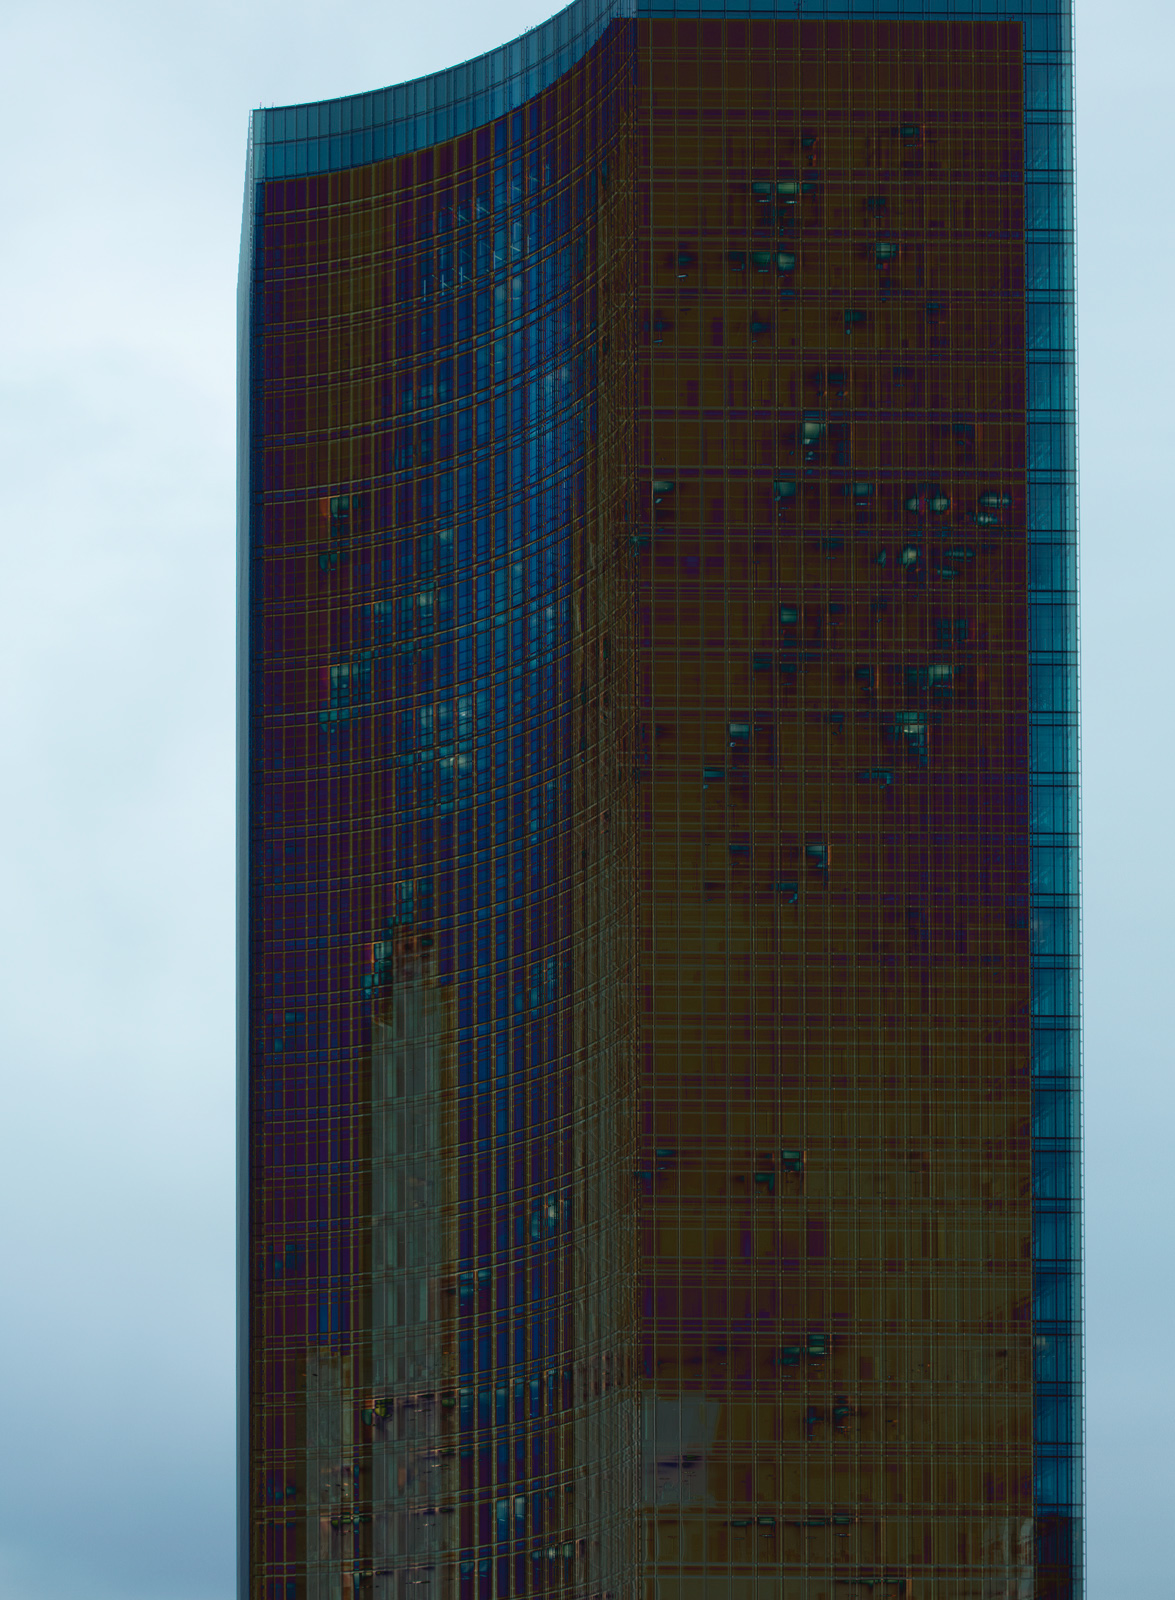 deconstruction architecturephotography fractals carstenwitte Frankfurt ffm deutsche bank skyscraper Bank germany